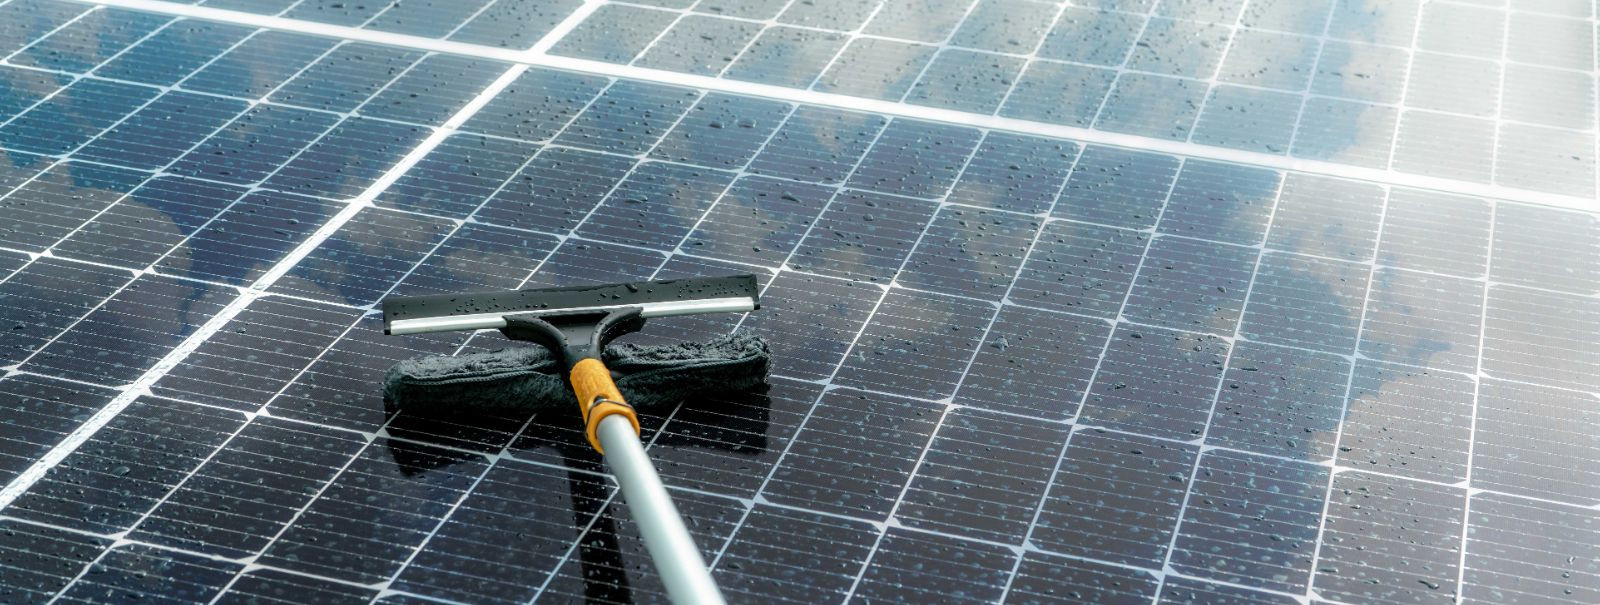 Oma päikesepaneelide hooldamine on ülioluline, et tagada nende tipp-töövõime, pikendada eluiga ja saada parim investeeringutasuvus. Regulaarne hooldus aitab tuv